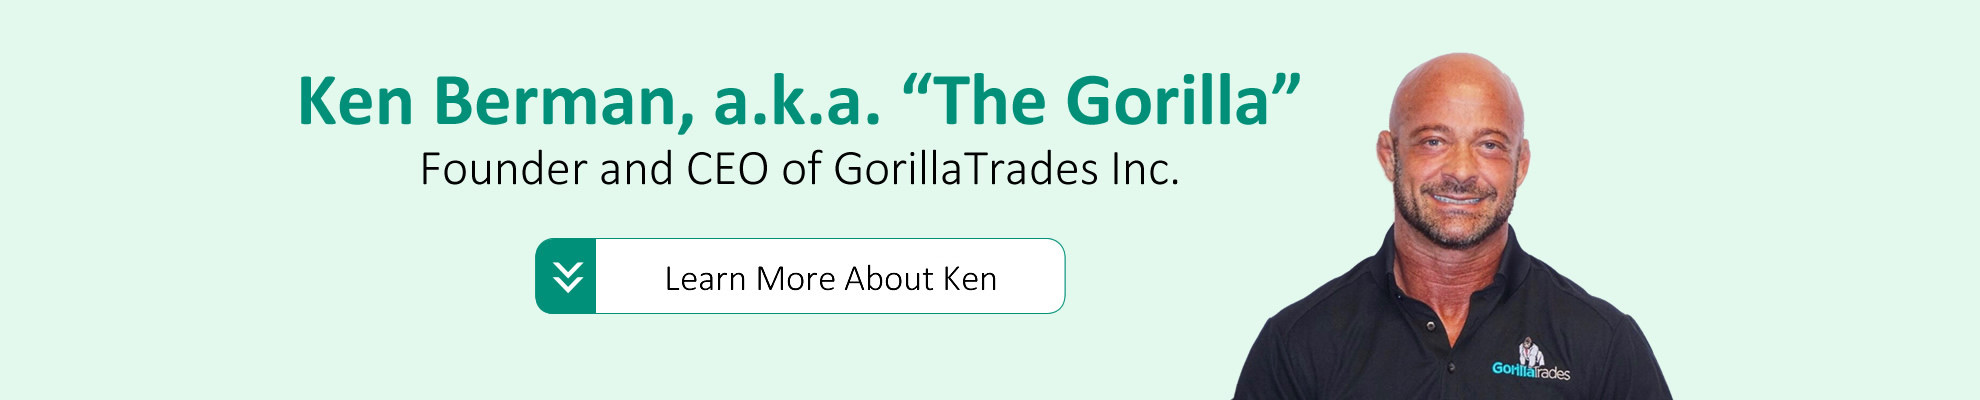 Ken Berman, a.k.a. The Gorilla